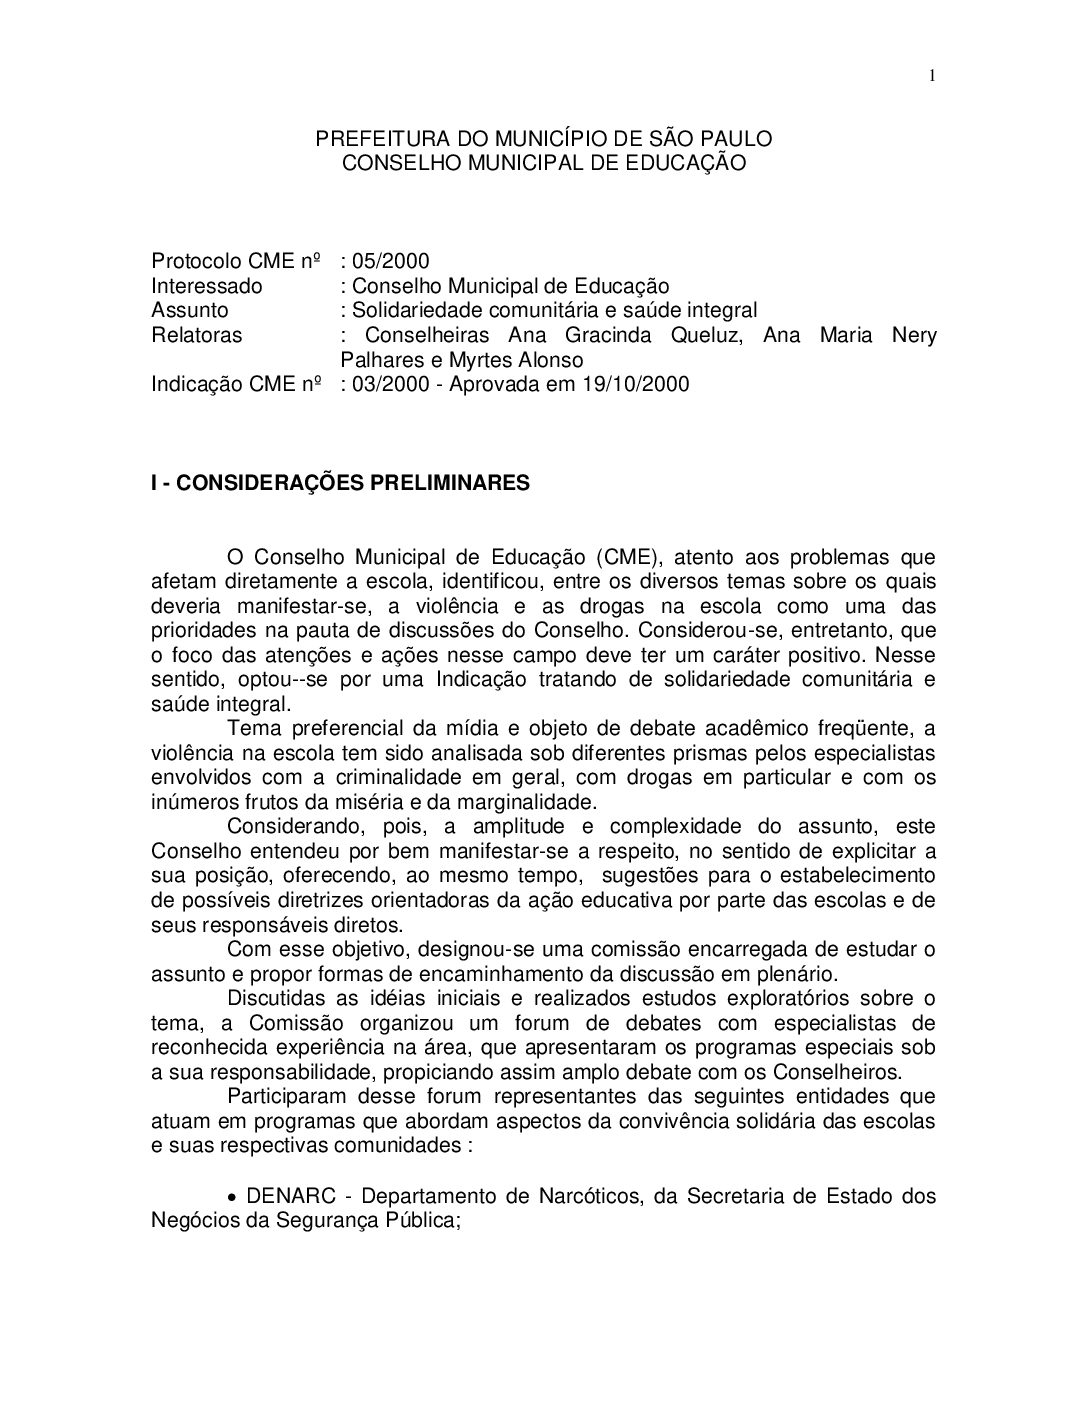 Indicação CME nº 03/2000 - Solidariedade comunitária e saúde integral 